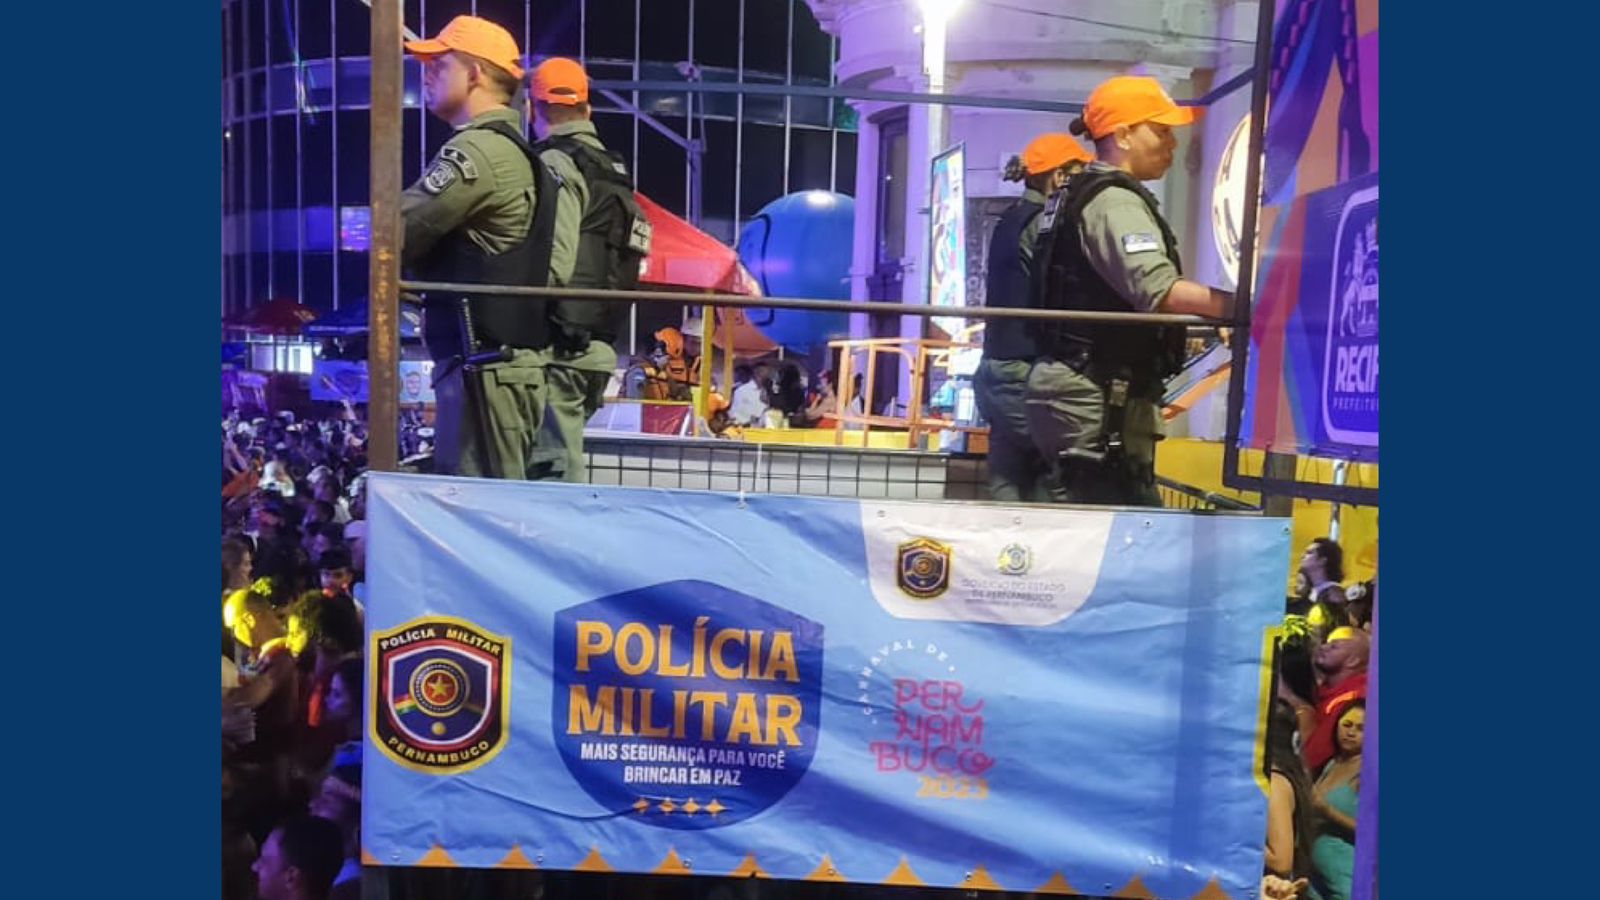 PM garante segurança de folições no Recife Antigo